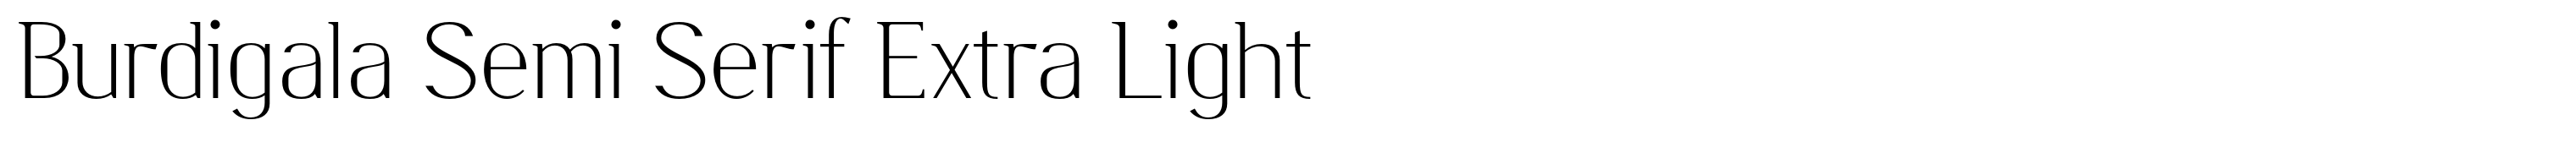 Burdigala Semi Serif Extra Light